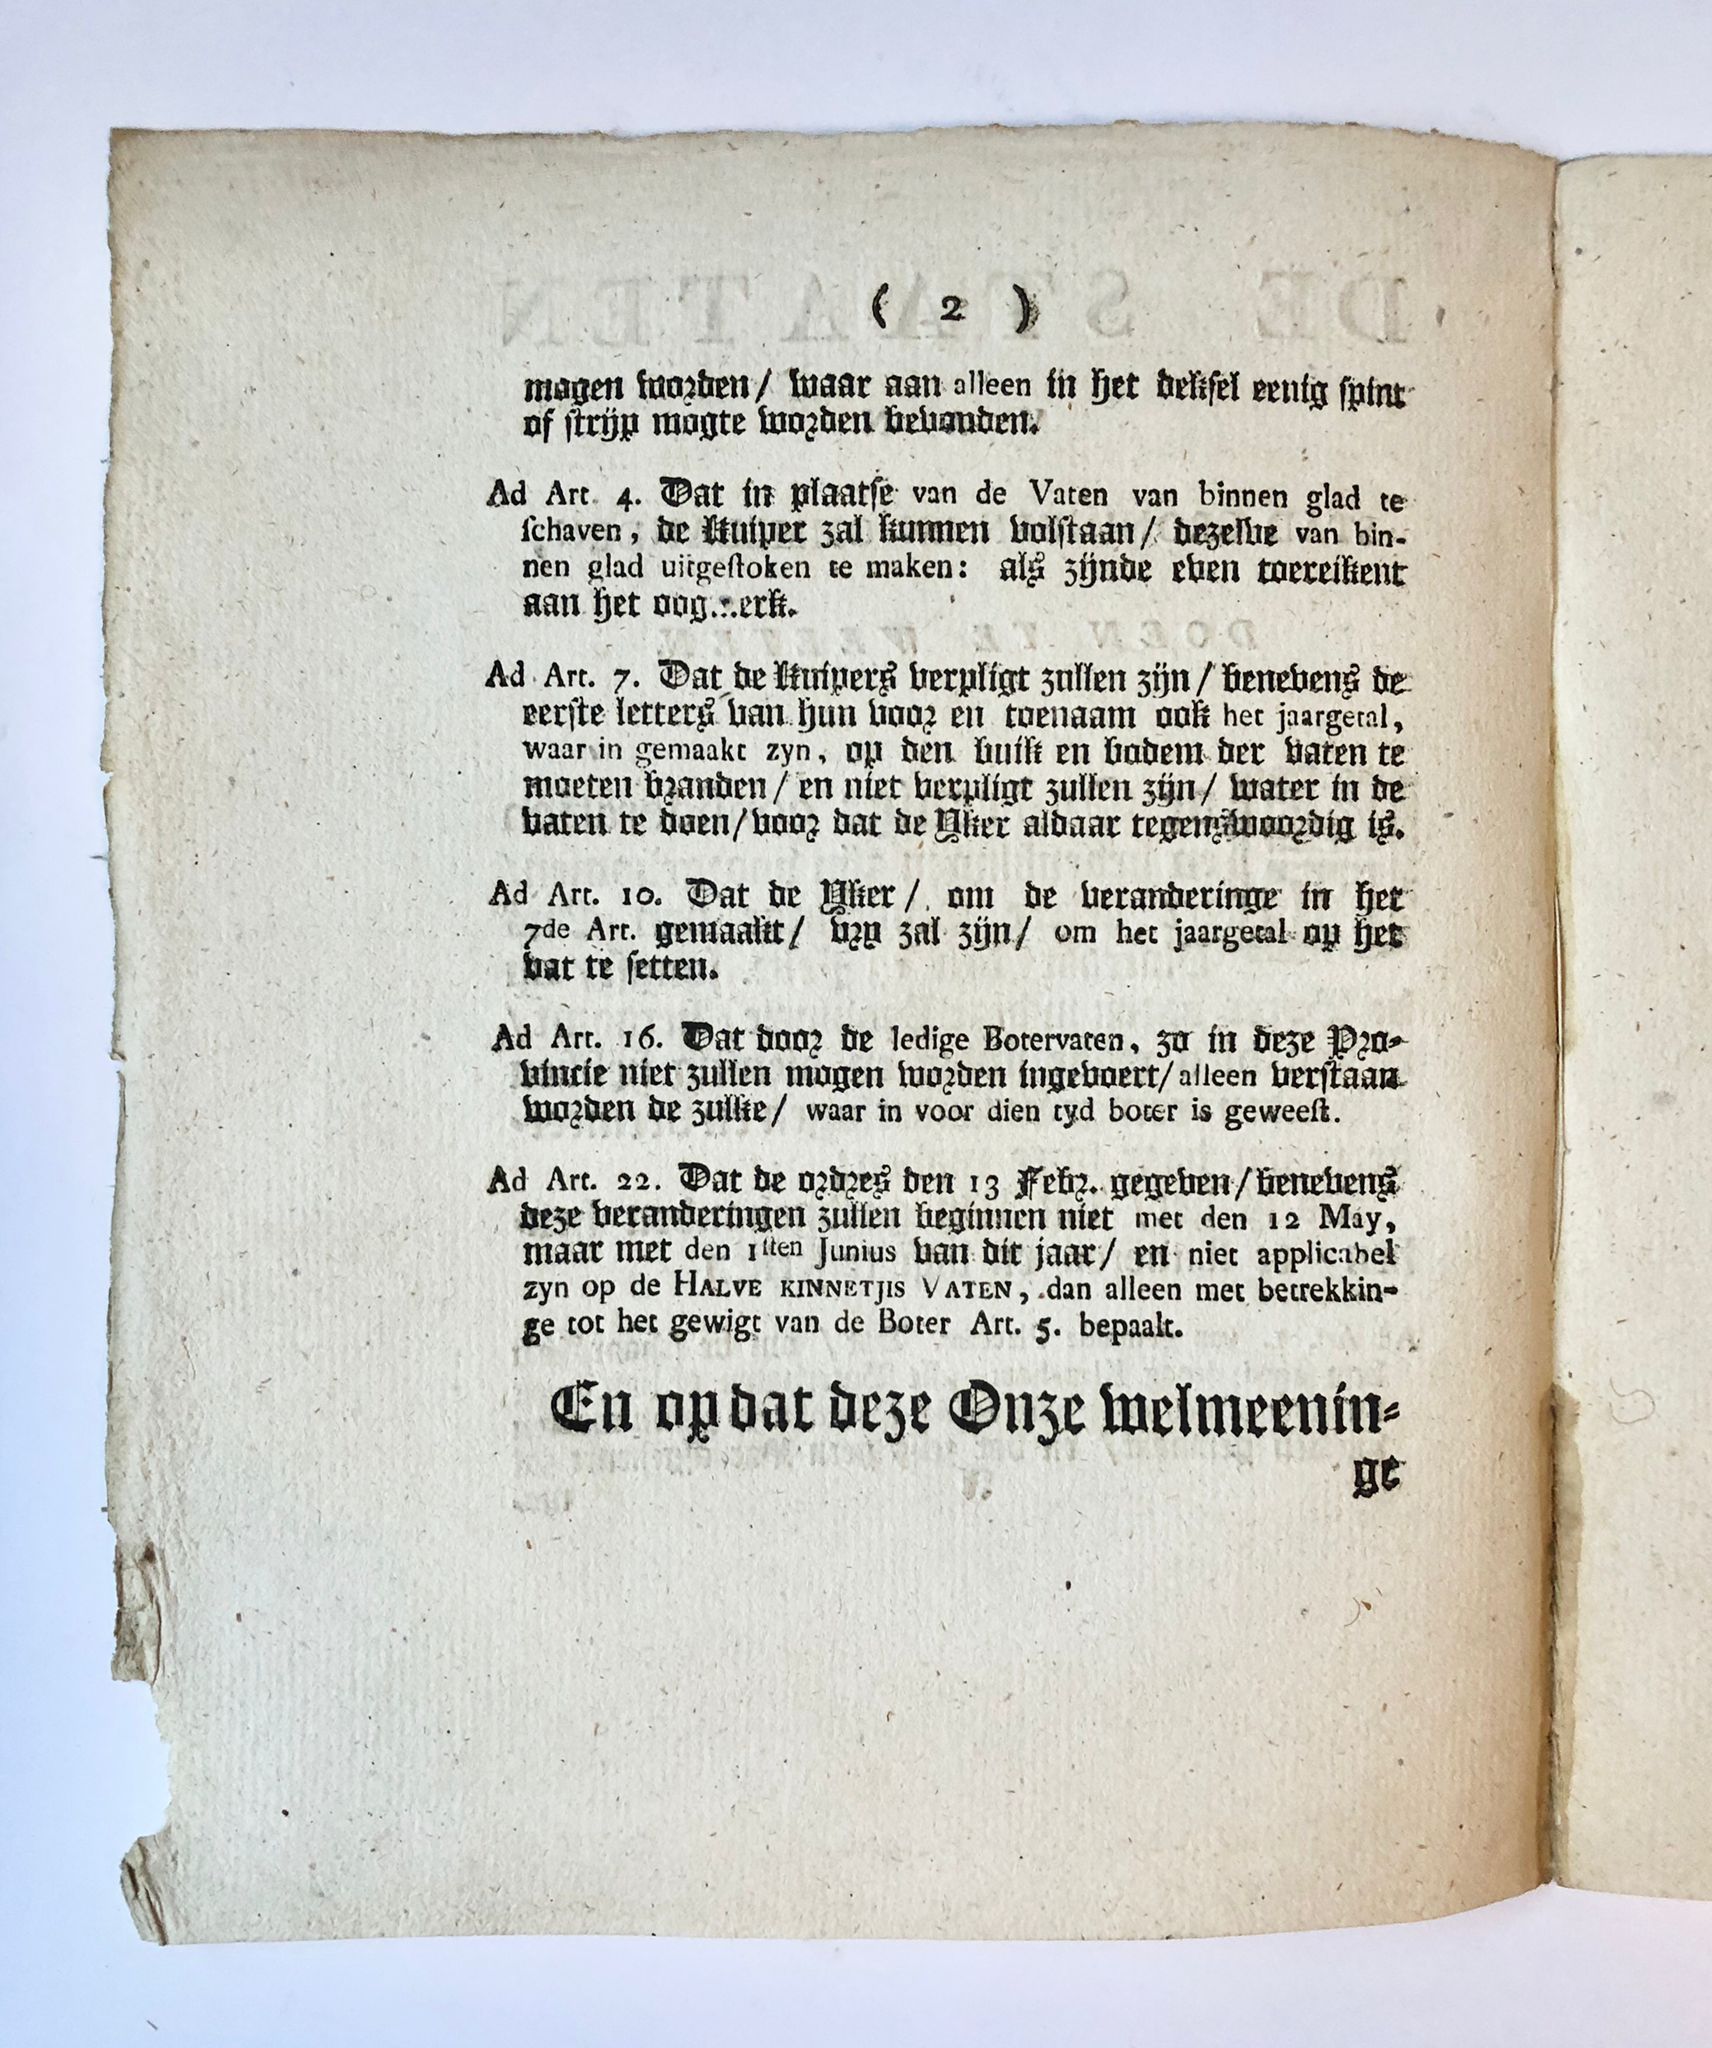 [Groningen, Boter, Butter [1789]] De Staaten van stad Groningen en ommelanden, doen te weeten, No. 70, [s.l., s.n. [1789], 3 pp.